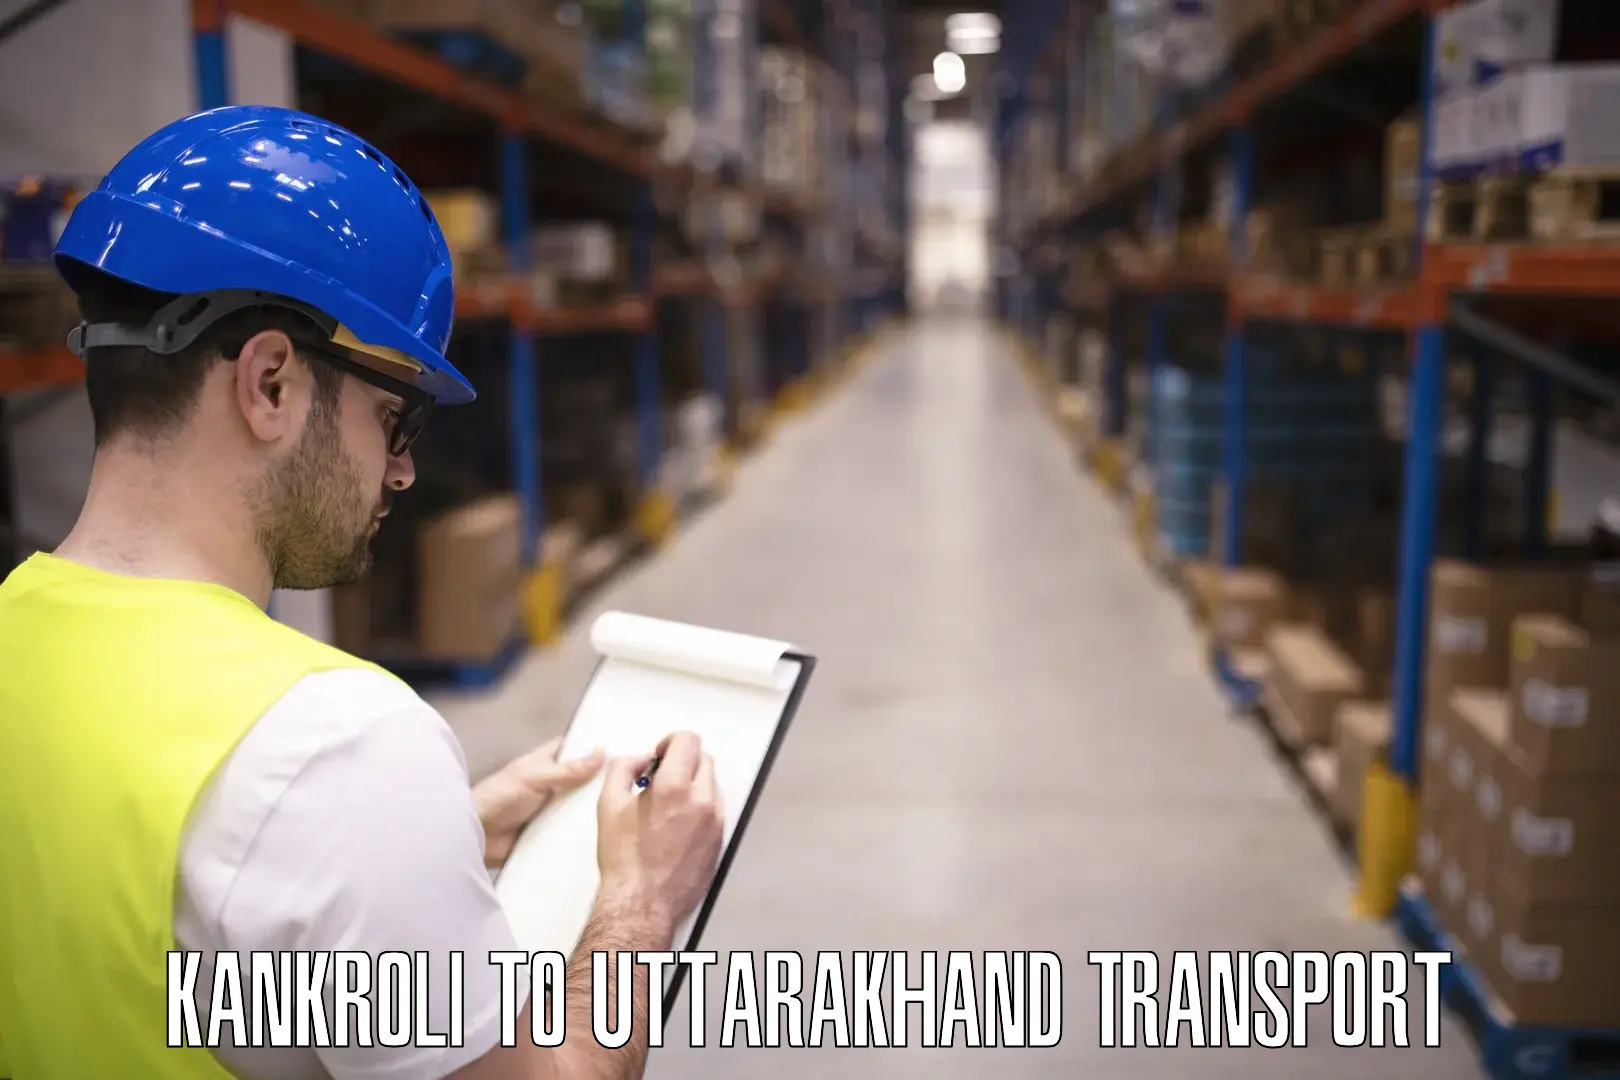 Vehicle parcel service Kankroli to IIT Roorkee